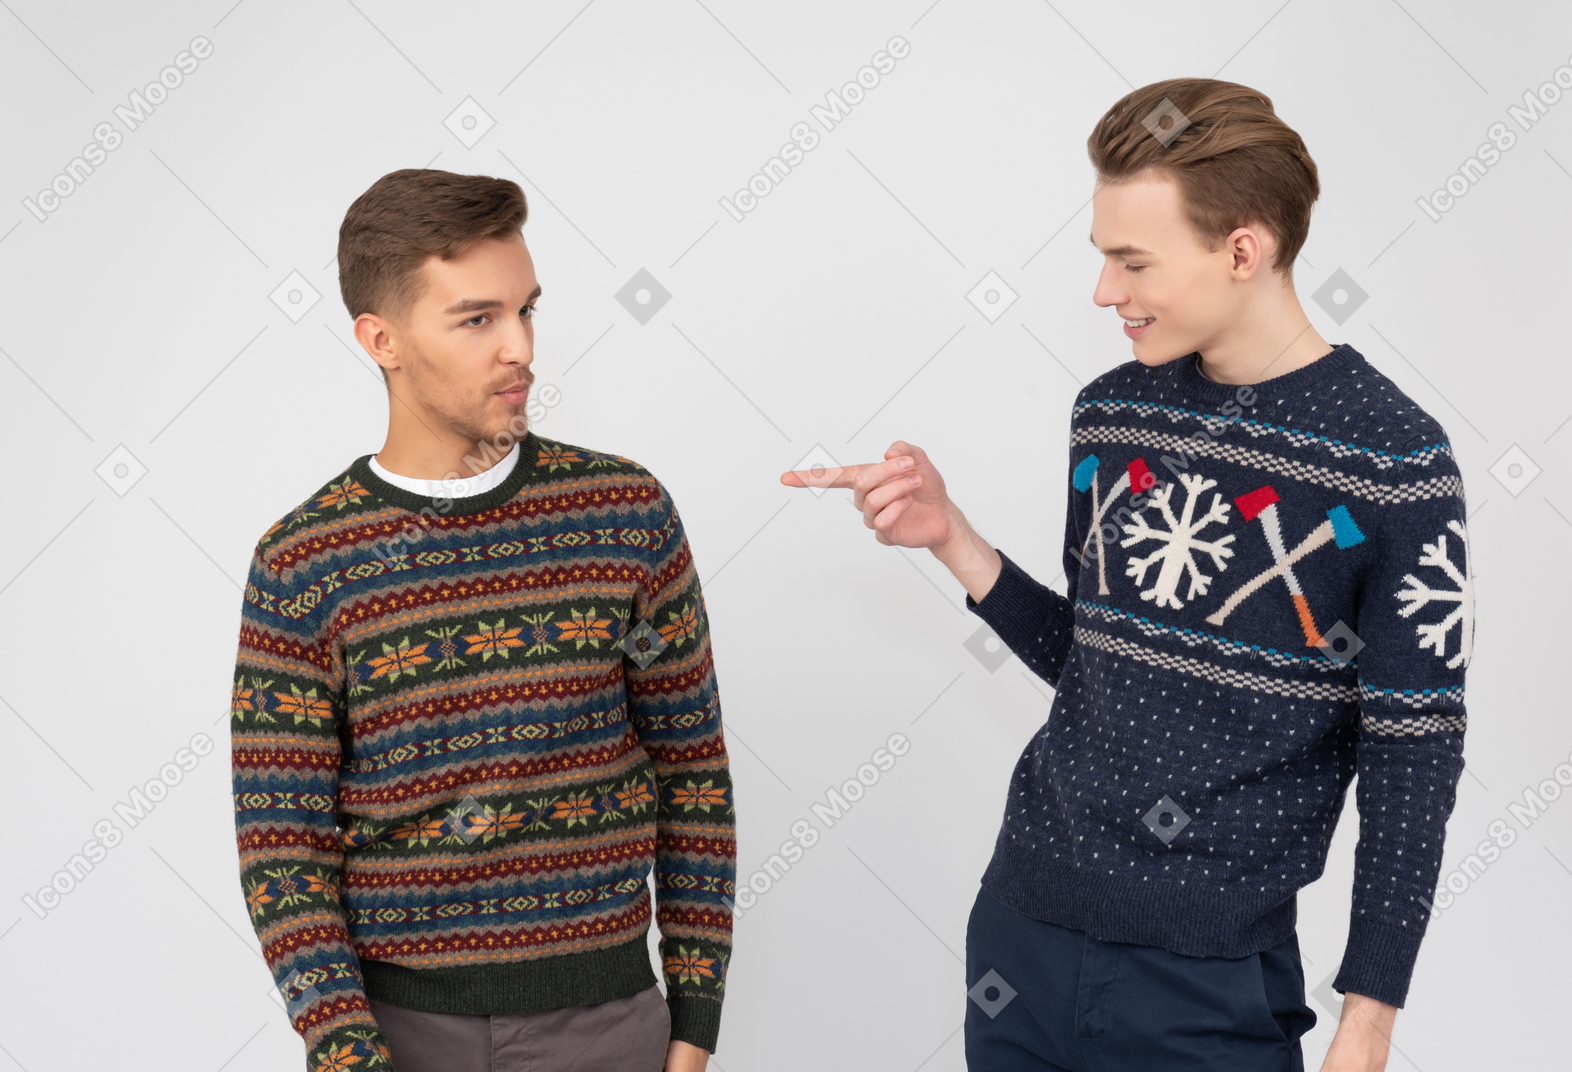 할머니는 형제 스웨터 키트를 얻었습니다.